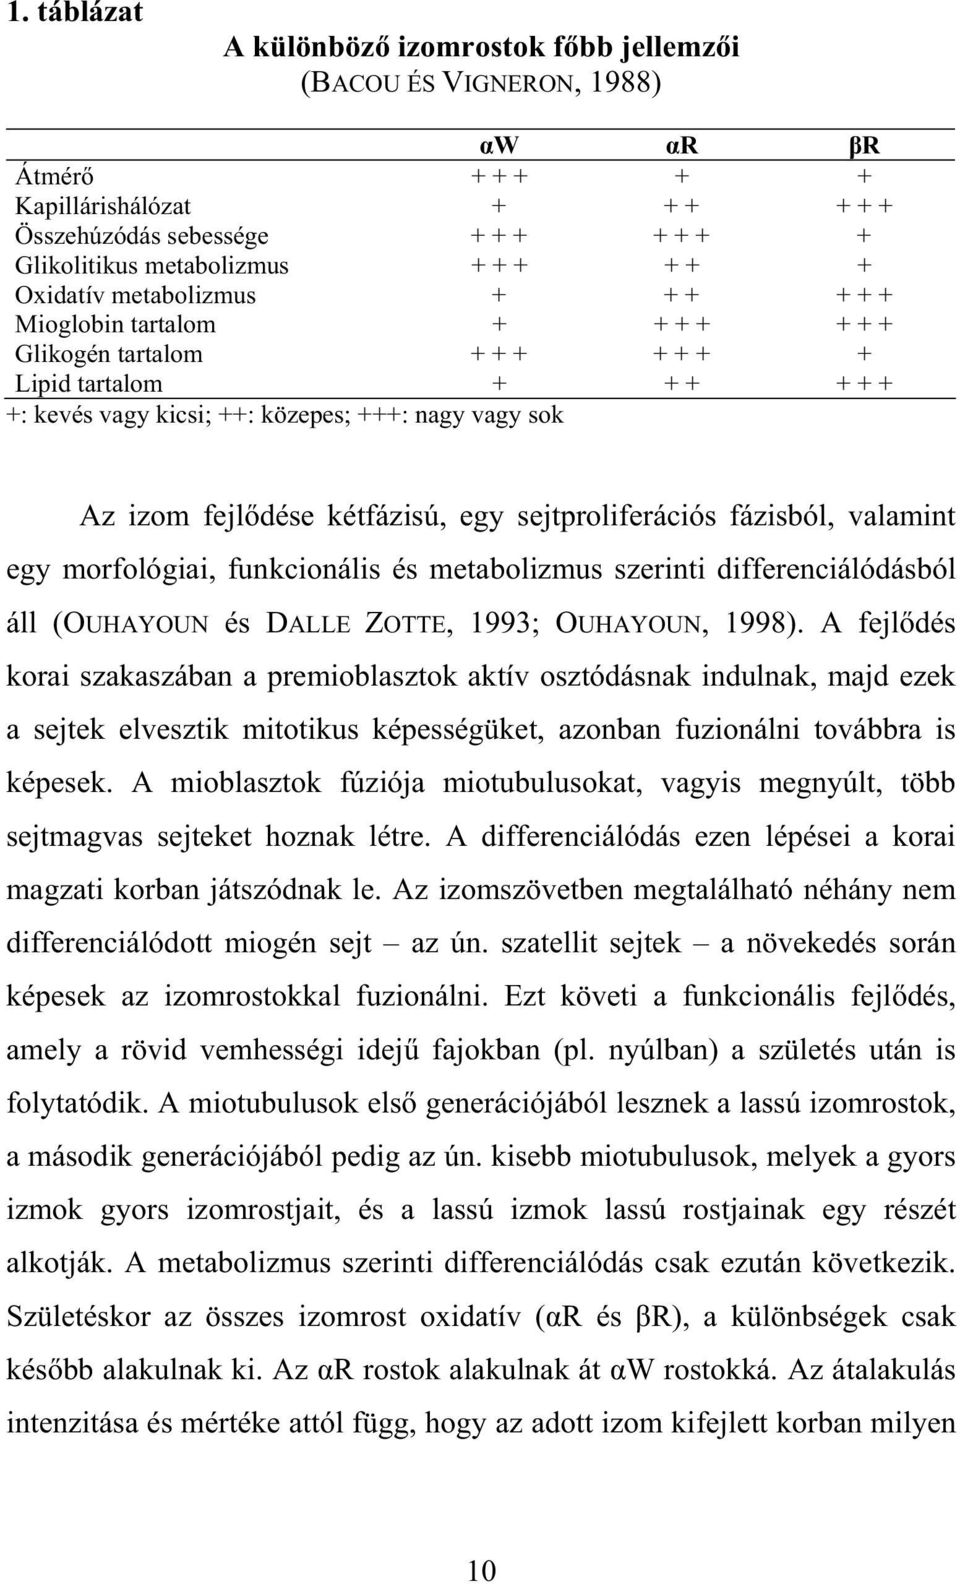 kétfázisú, egy sejtproliferációs fázisból, valamint egy morfológiai, funkcionális és metabolizmus szerinti differenciálódásból áll (OUHAYOUN és DALLE ZOTTE, 1993; OUHAYOUN, 1998).